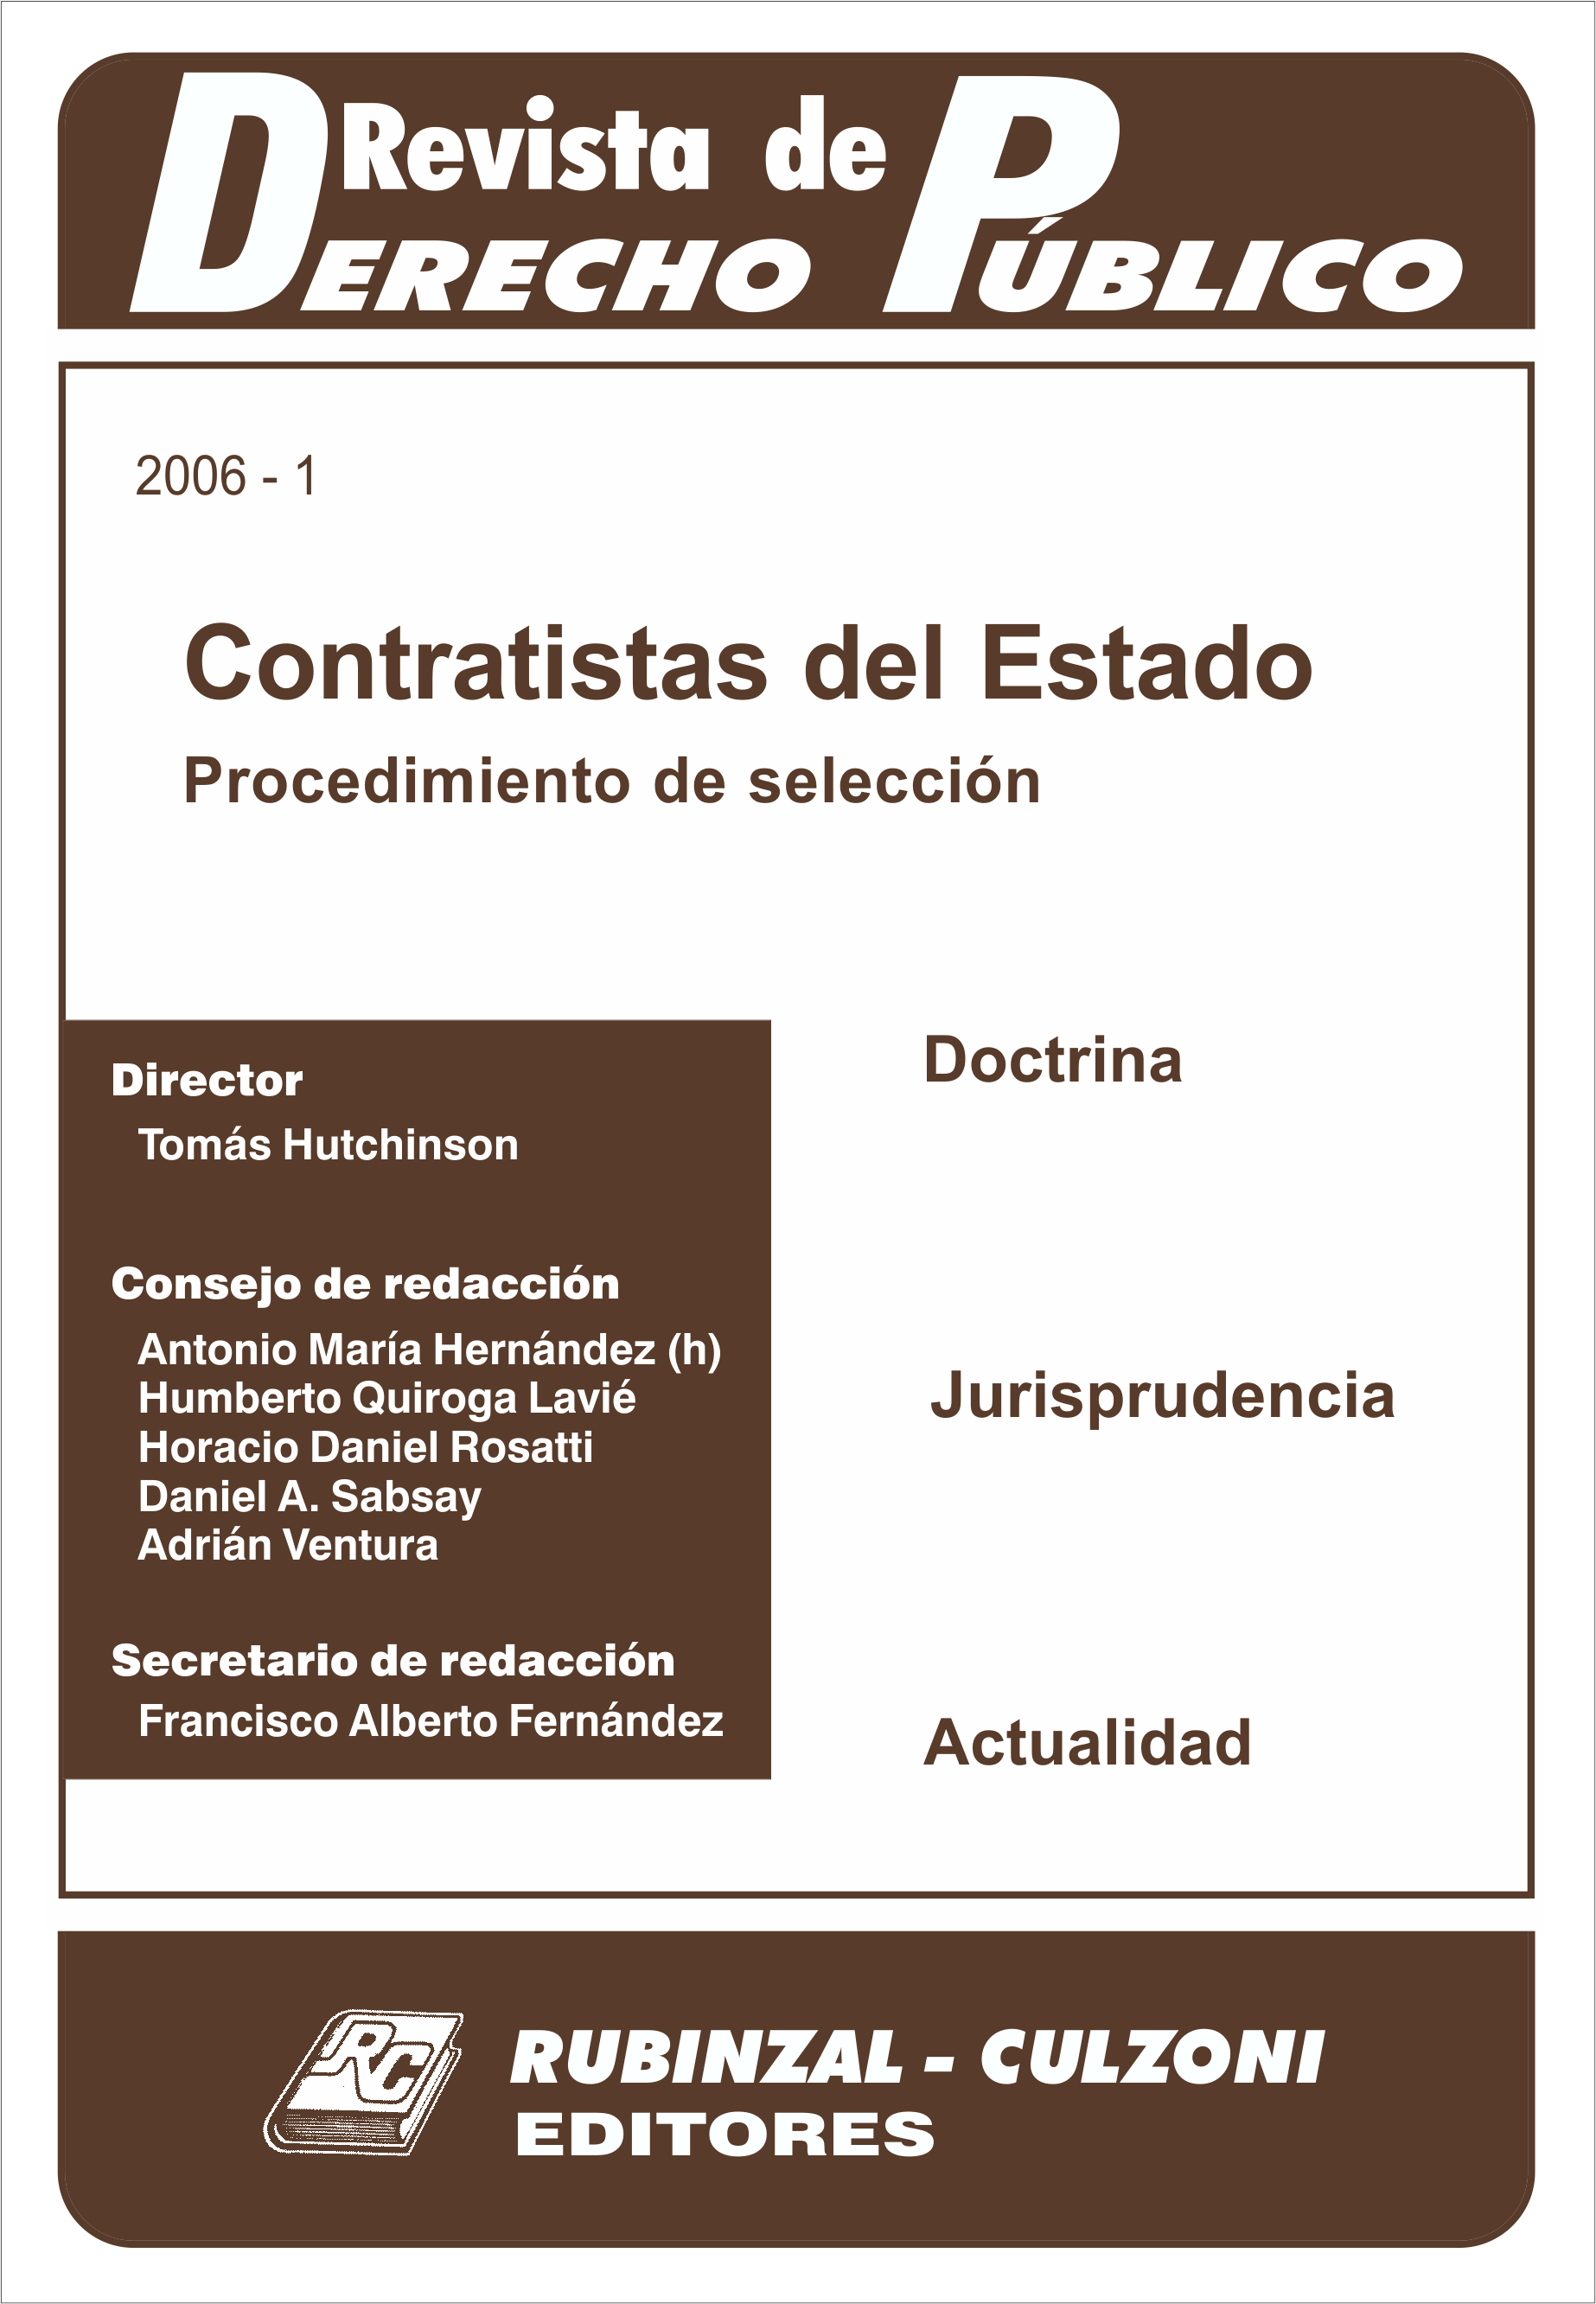 Revista de Derecho Público - Contratistas del Estado. Procedimiento de selección.